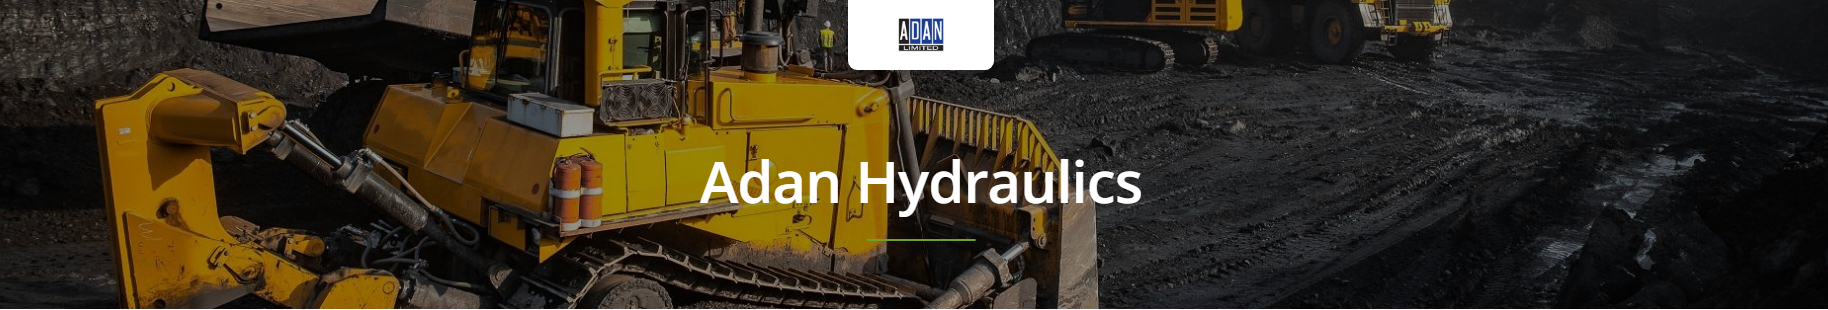 Adan Hydraulic Brakes